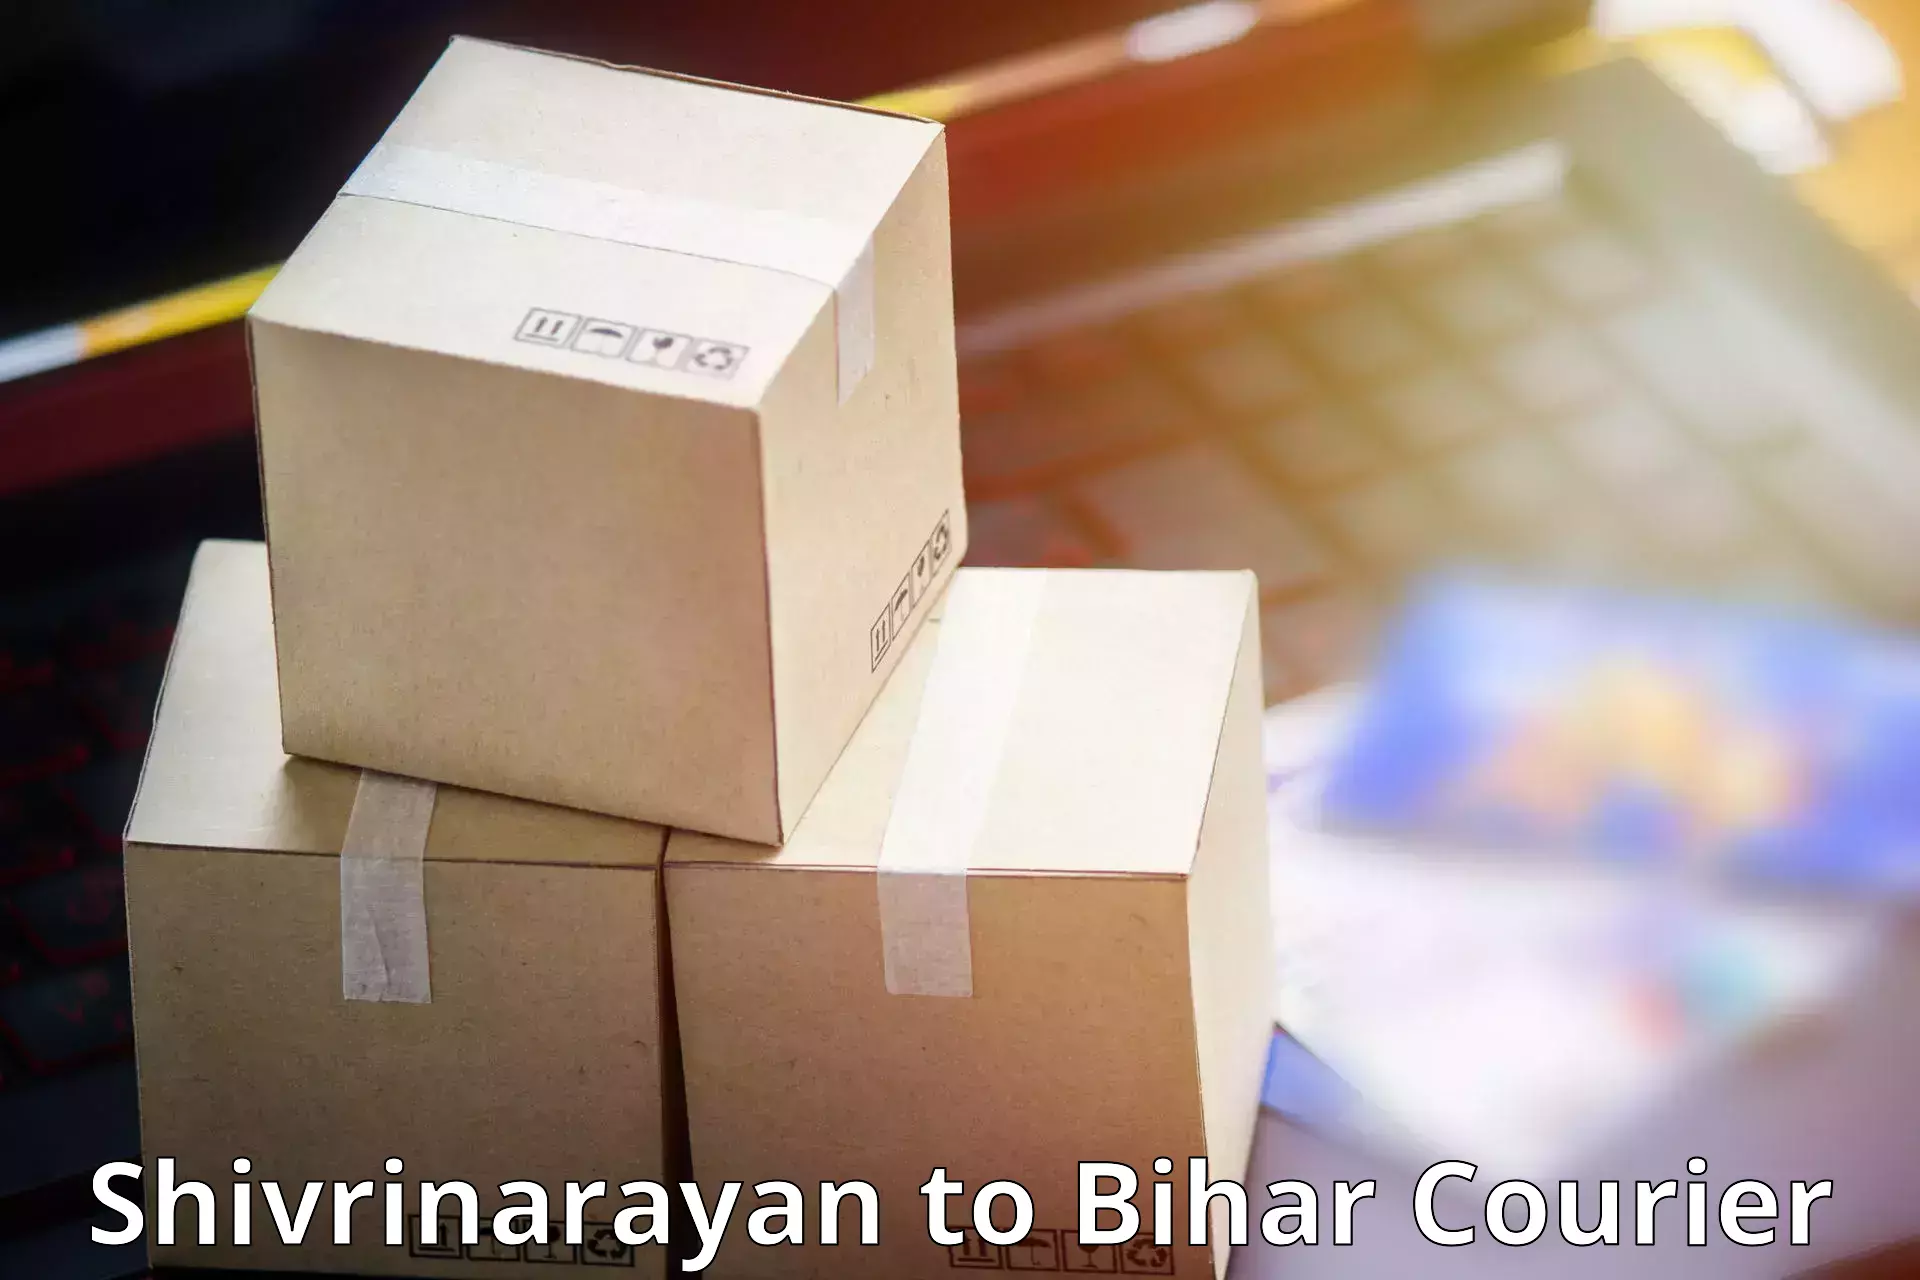 Seamless shipping service Shivrinarayan to Bikramganj